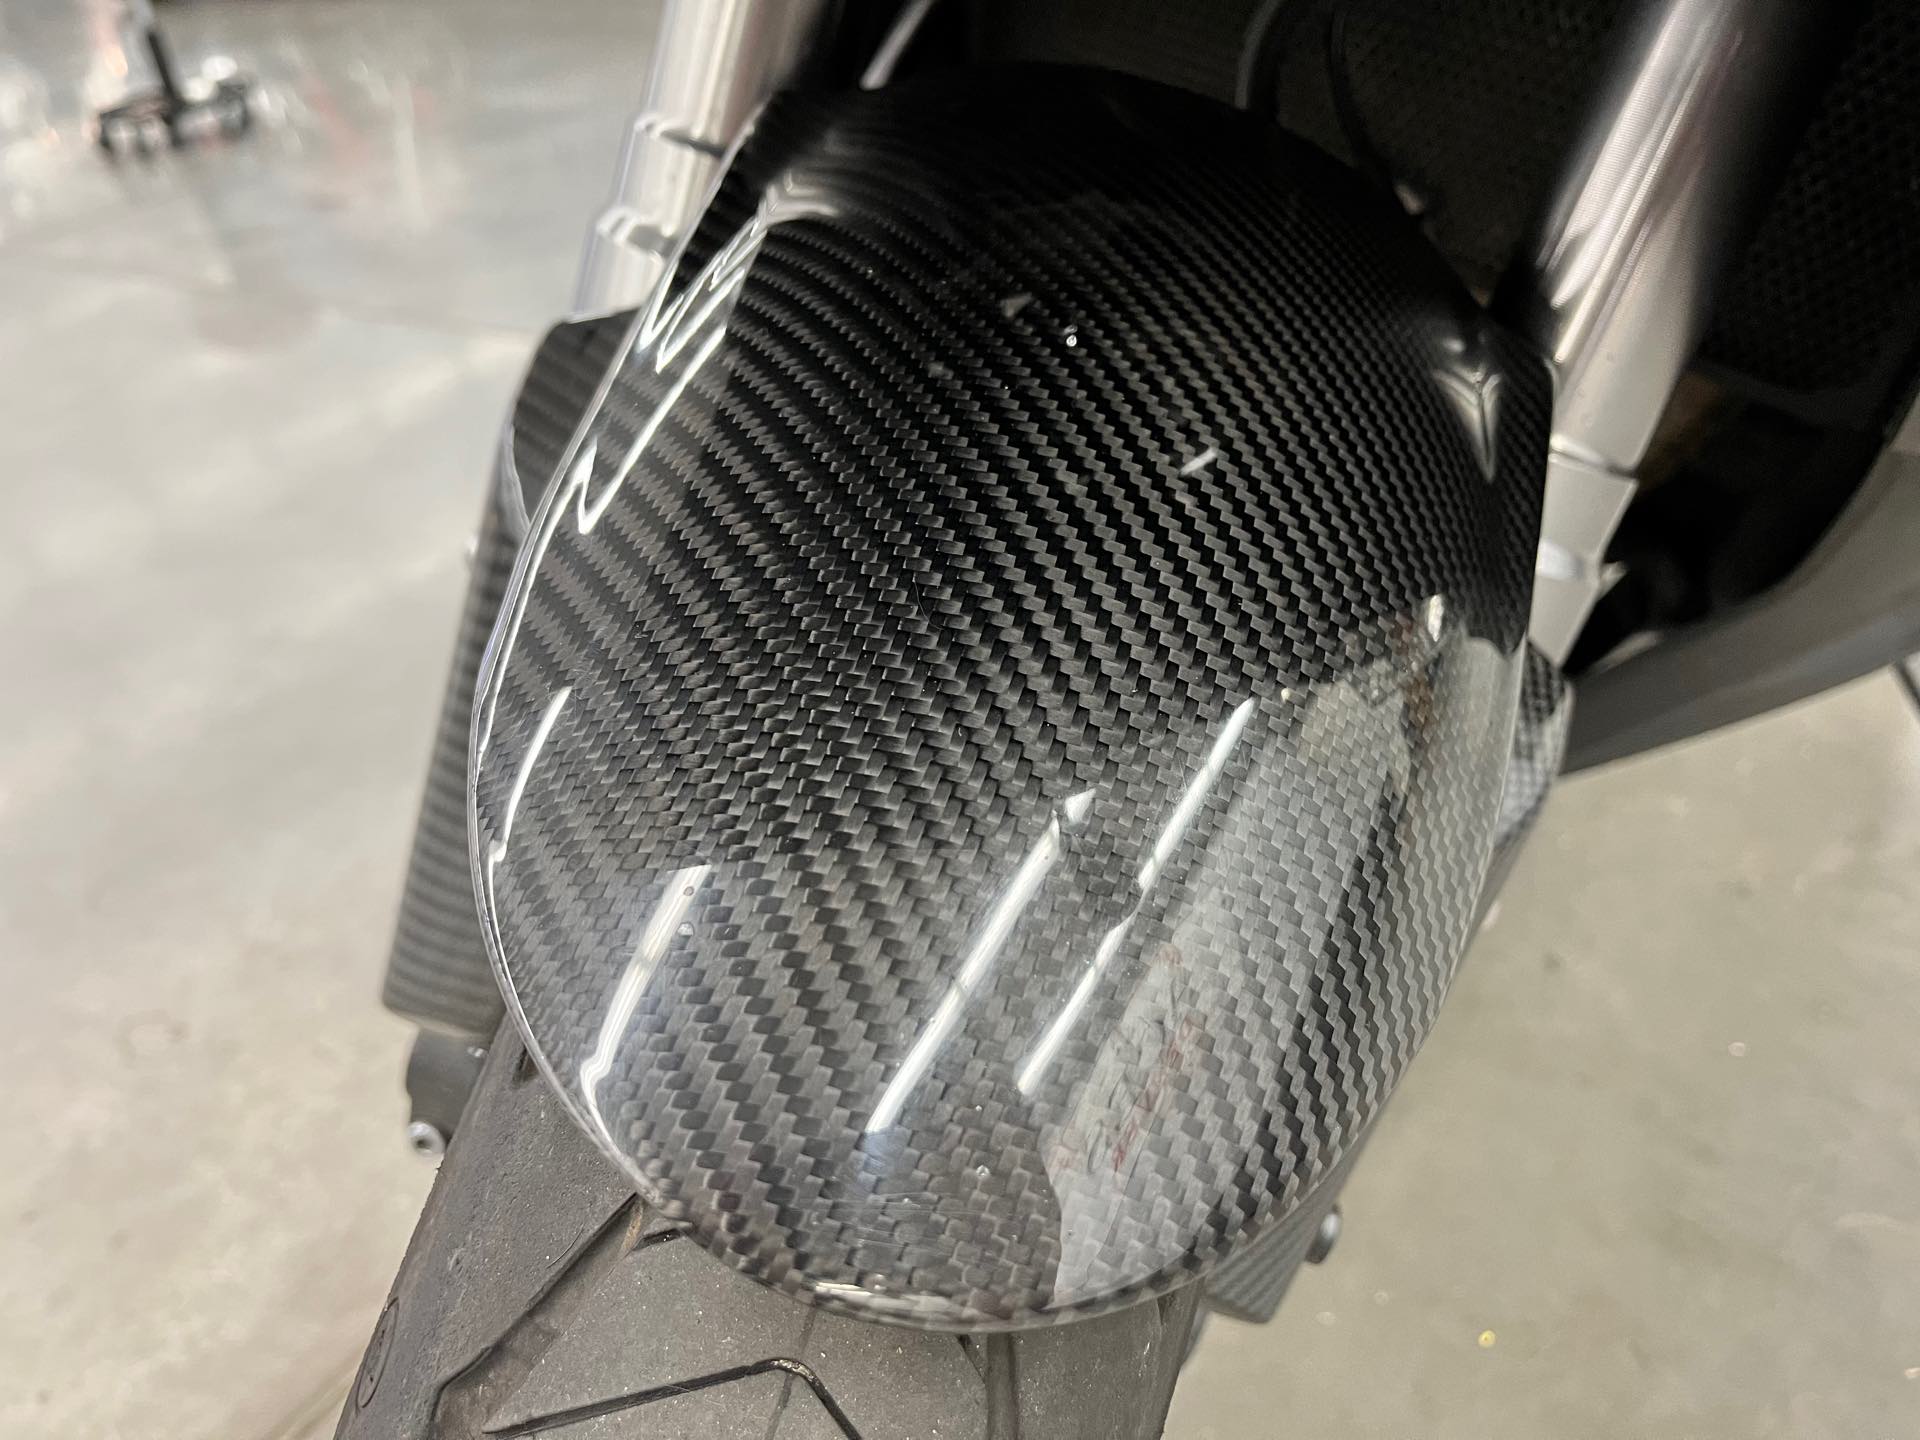 2017 Kawasaki Ninja 1000 ABS at Aces Motorcycles - Denver